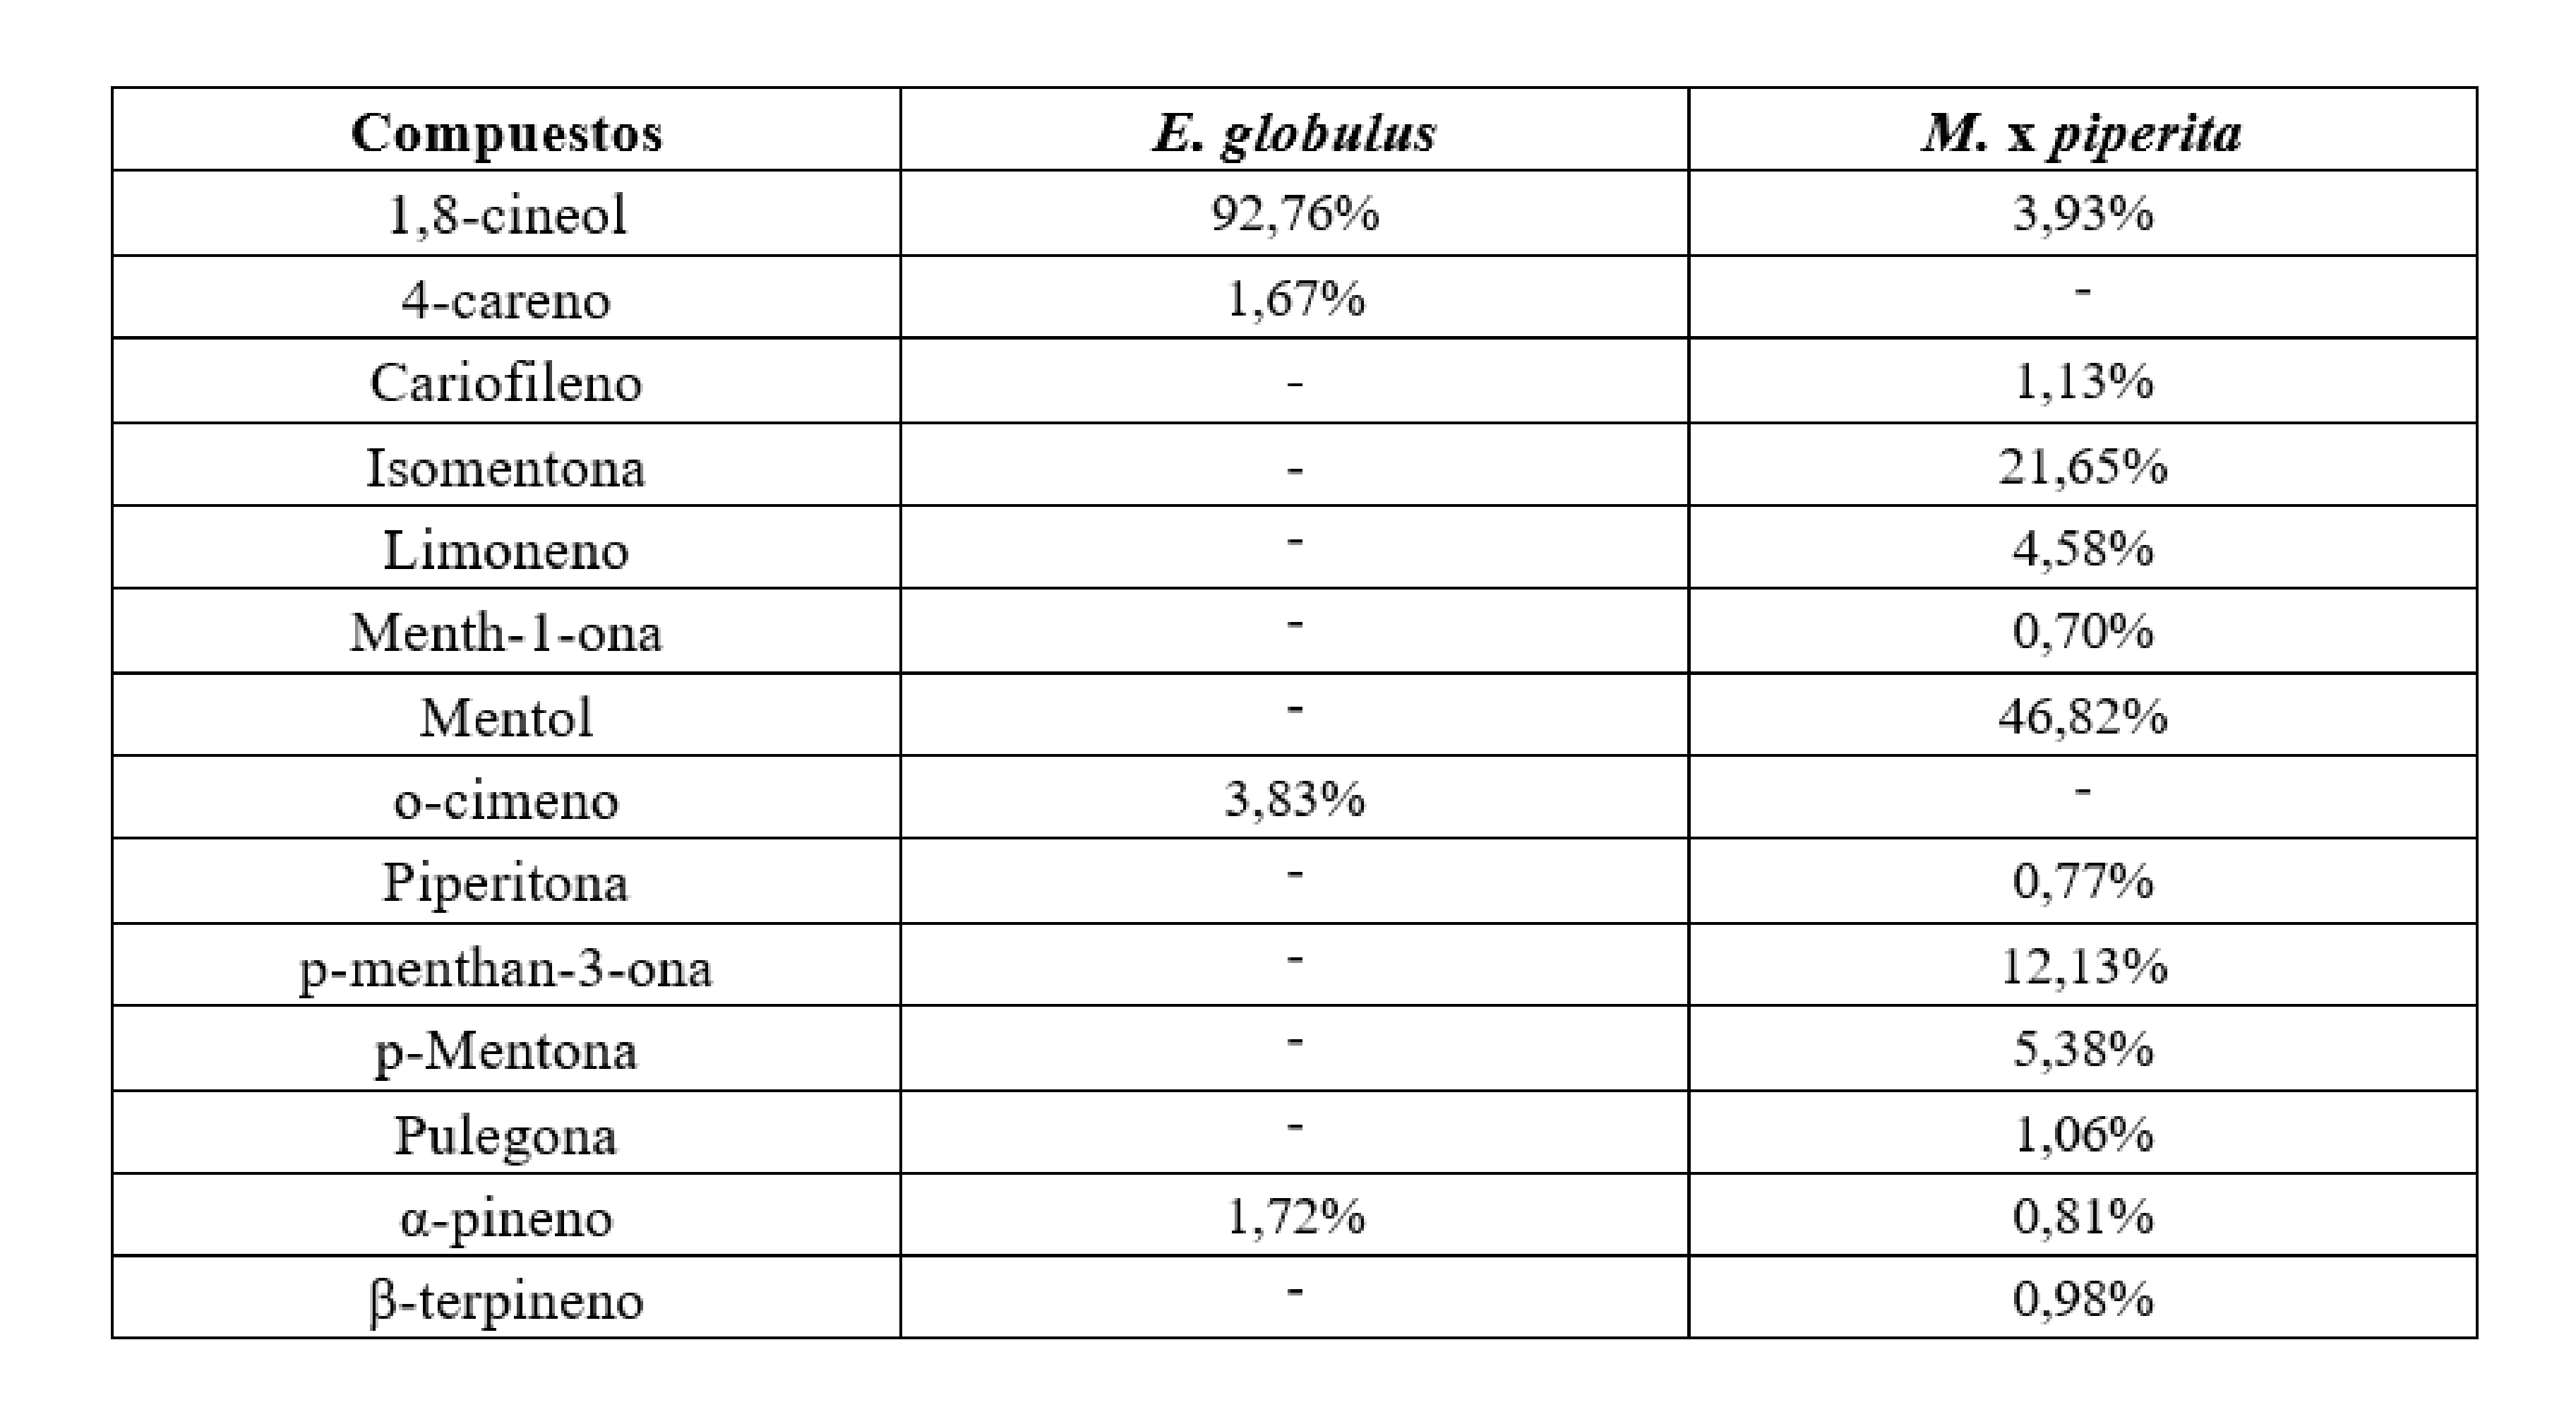 Composición de los aceites esenciales de E. globulus y M. x
piperita. / Composition of E. globulus
and M. x piperita essentials oils.